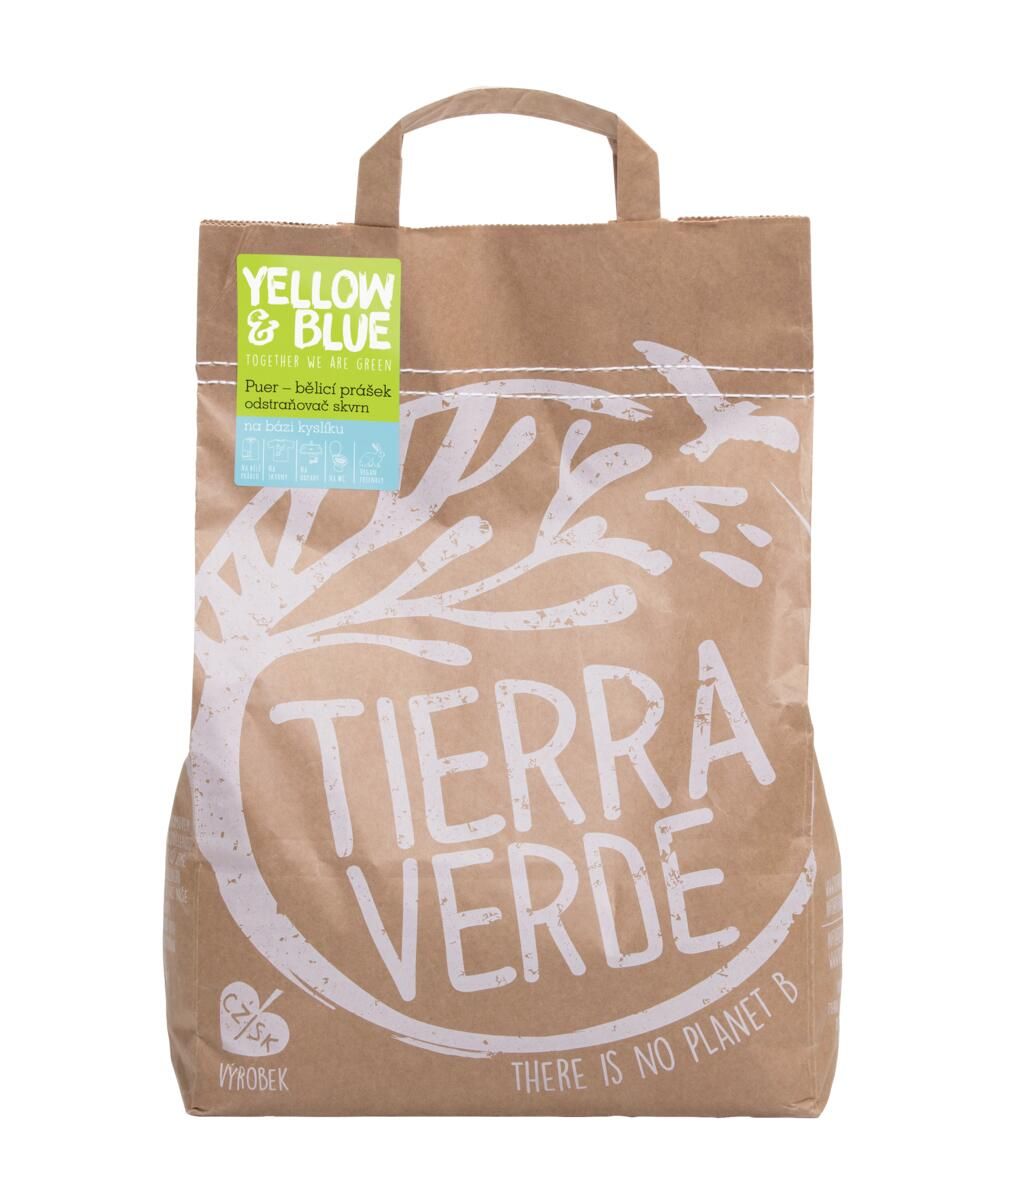 Tierra Verde Puer – bělicí prášek 5 kg Tierra Verde